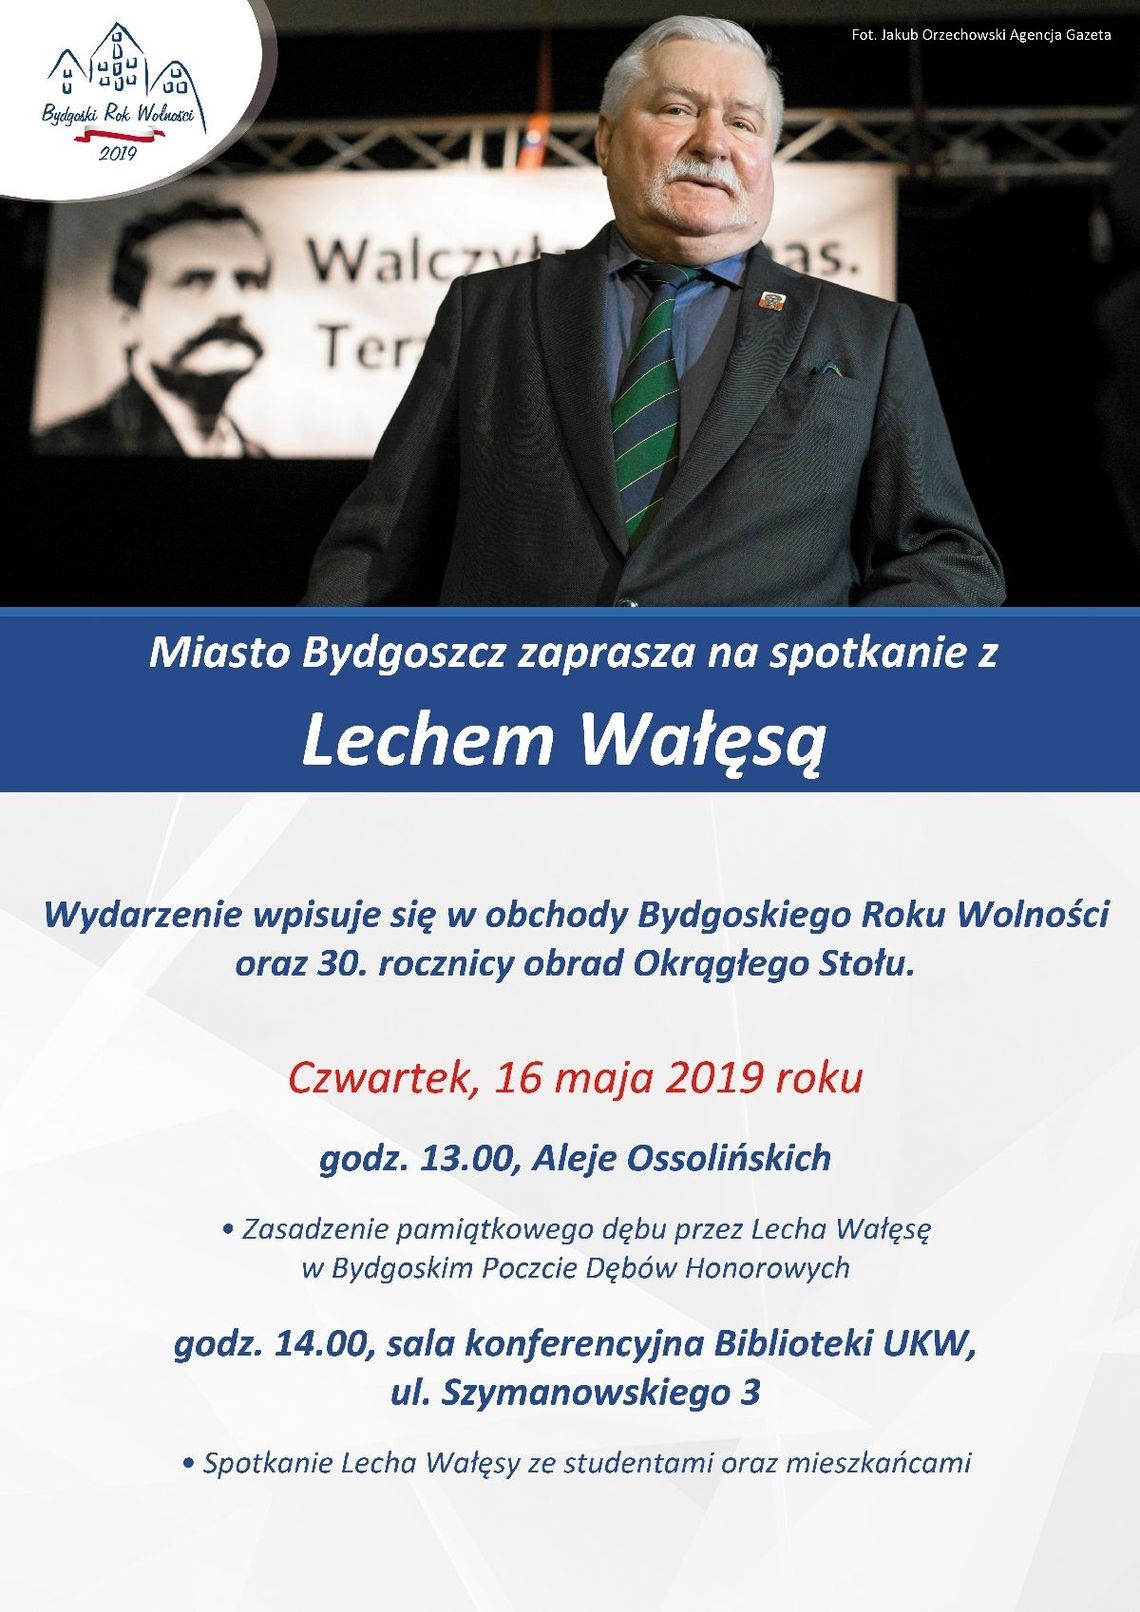 Lech Wałęsa posadzi dąb przy al. Ossolińskich - Wizyta czasowo odwołana!